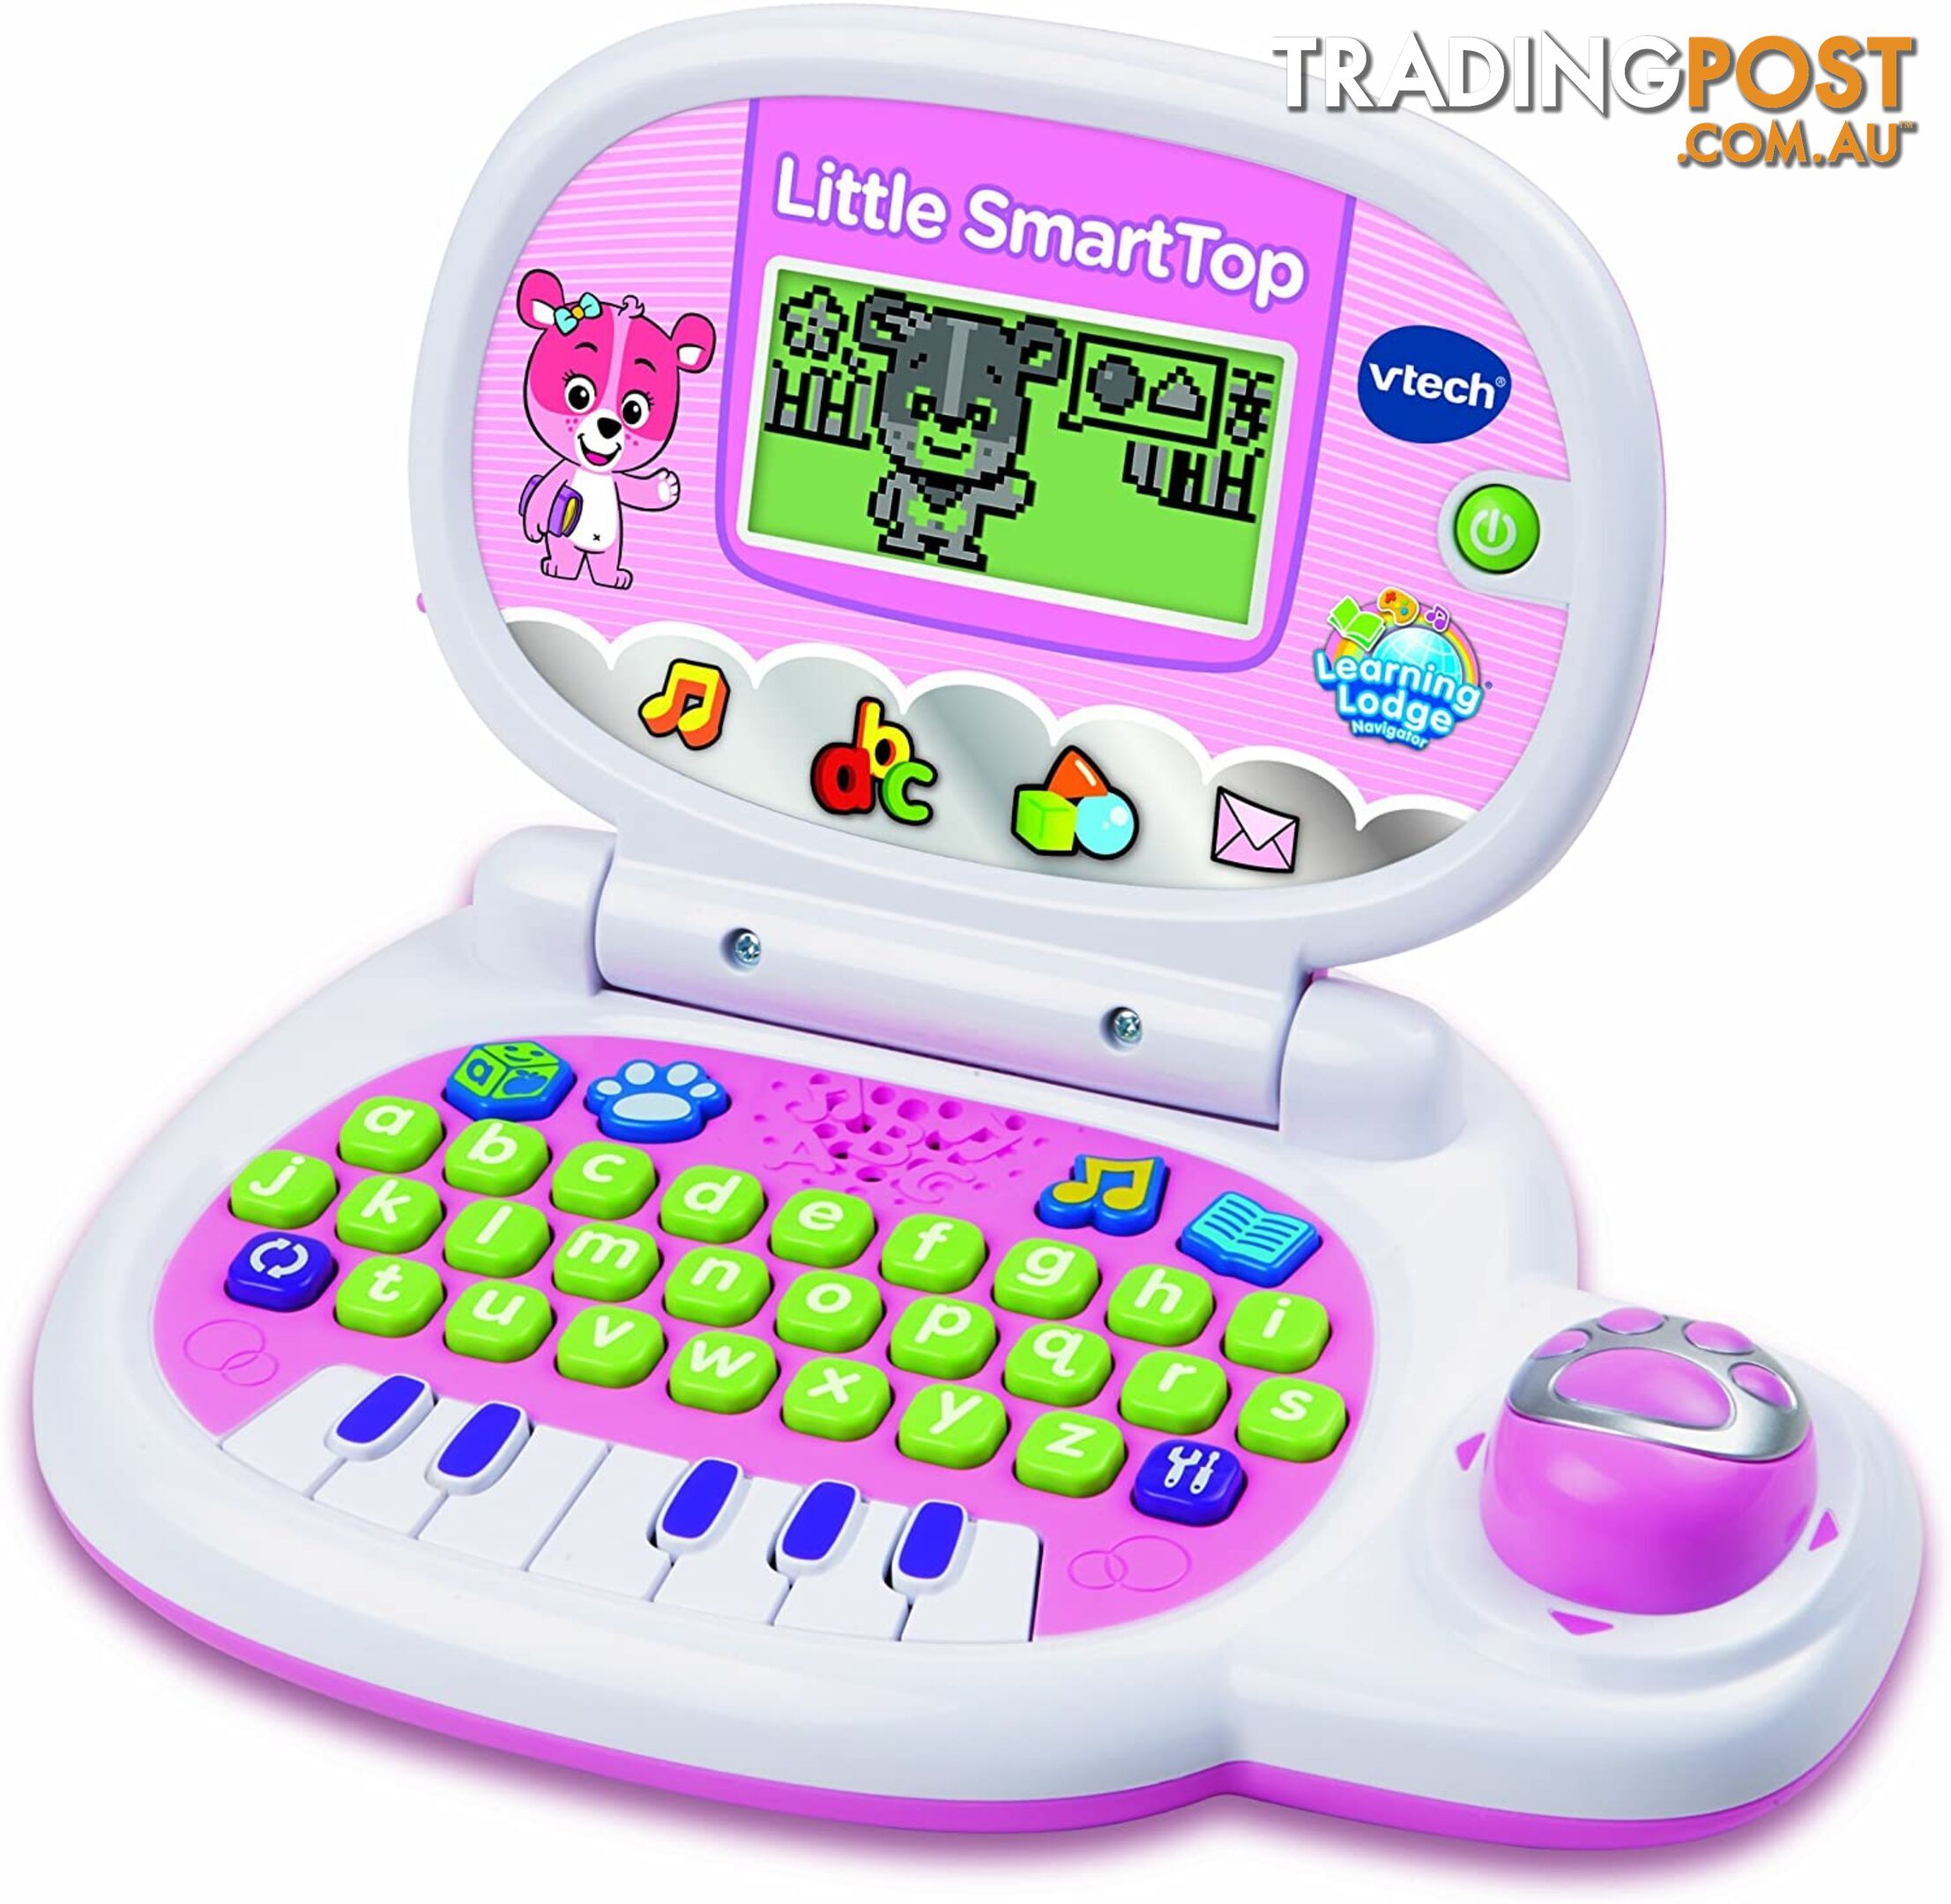 Vtech - Little Smart Top Toy Computer Vtech Tn80139553004 - 3417761395530